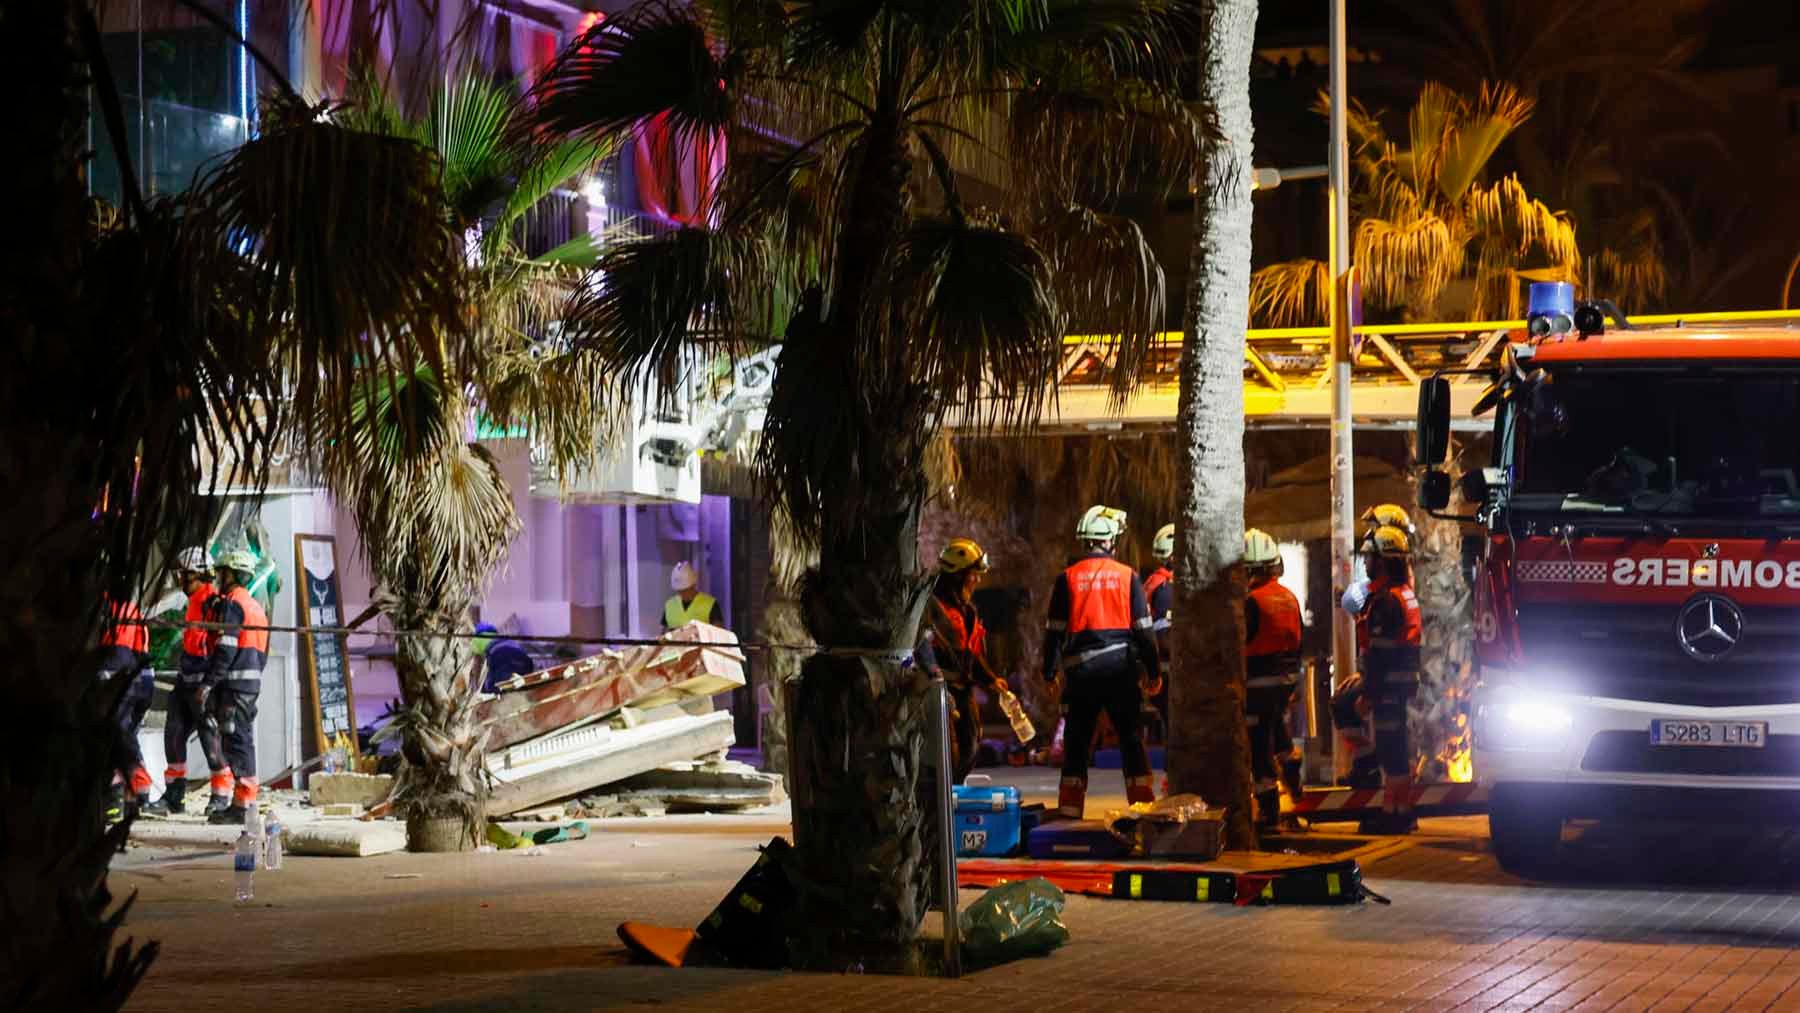 Una navarra de 23 años entre los muertos del restaurante derrumbado en Palma de Mallorca